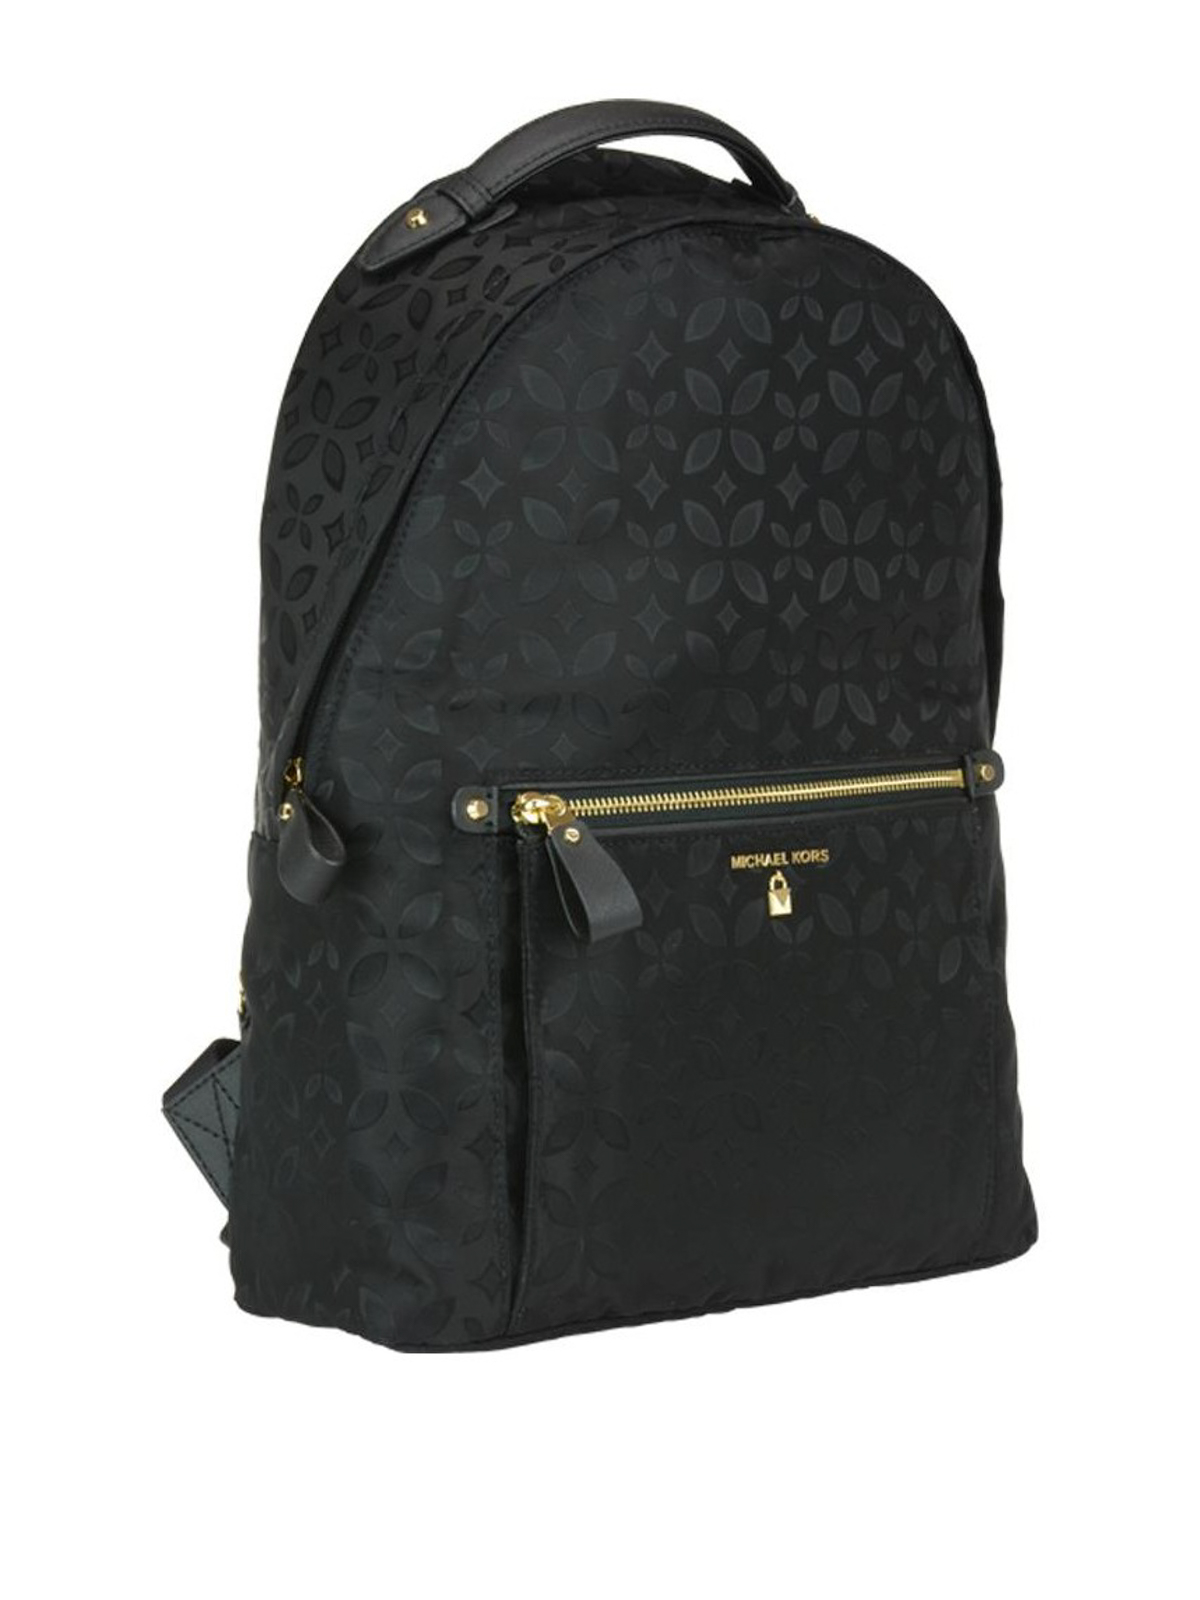 Michael Kors Kelsey Nylon Backpack 179  eBay